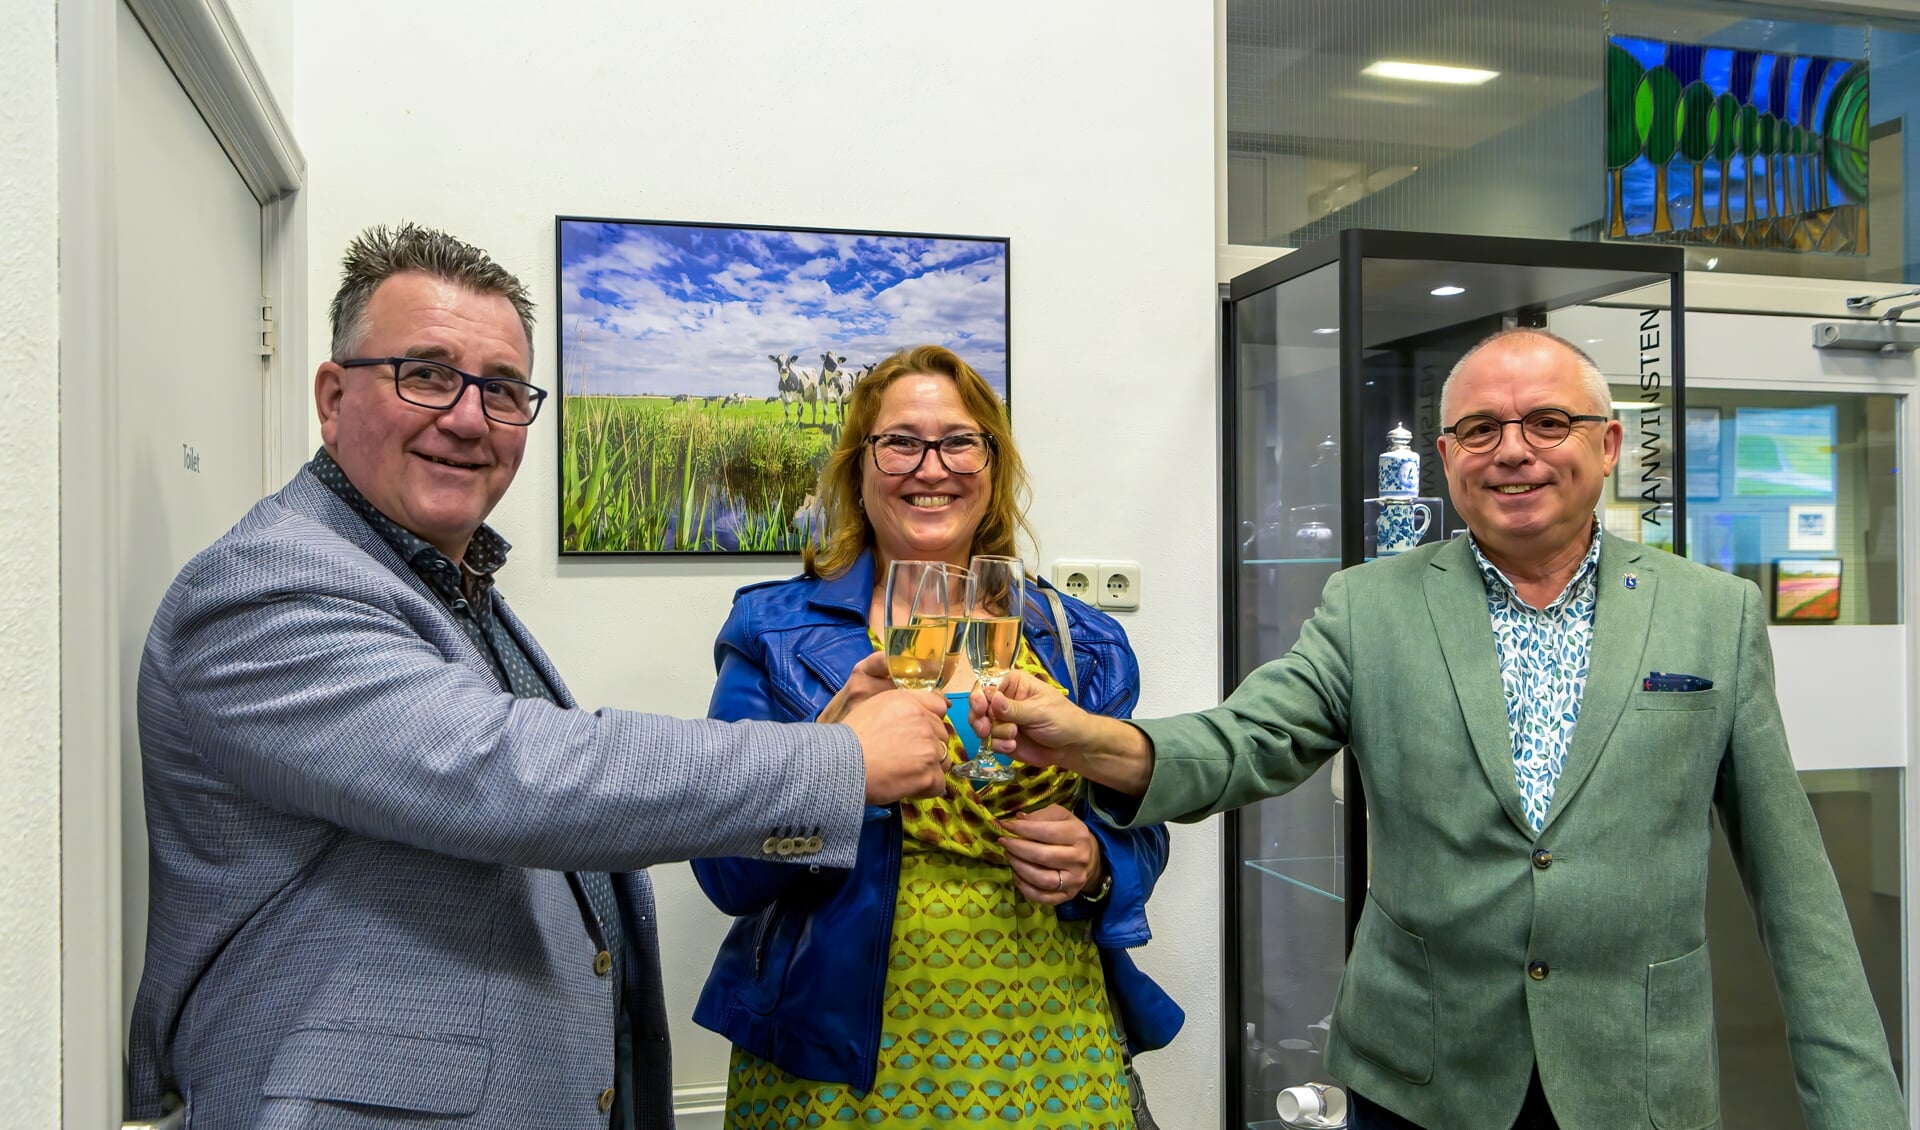 Caroline Pleysier toost met wethouders Mario Hegger en Jeroen Schalkwijk op haar winnende foto (op de achtergrond).